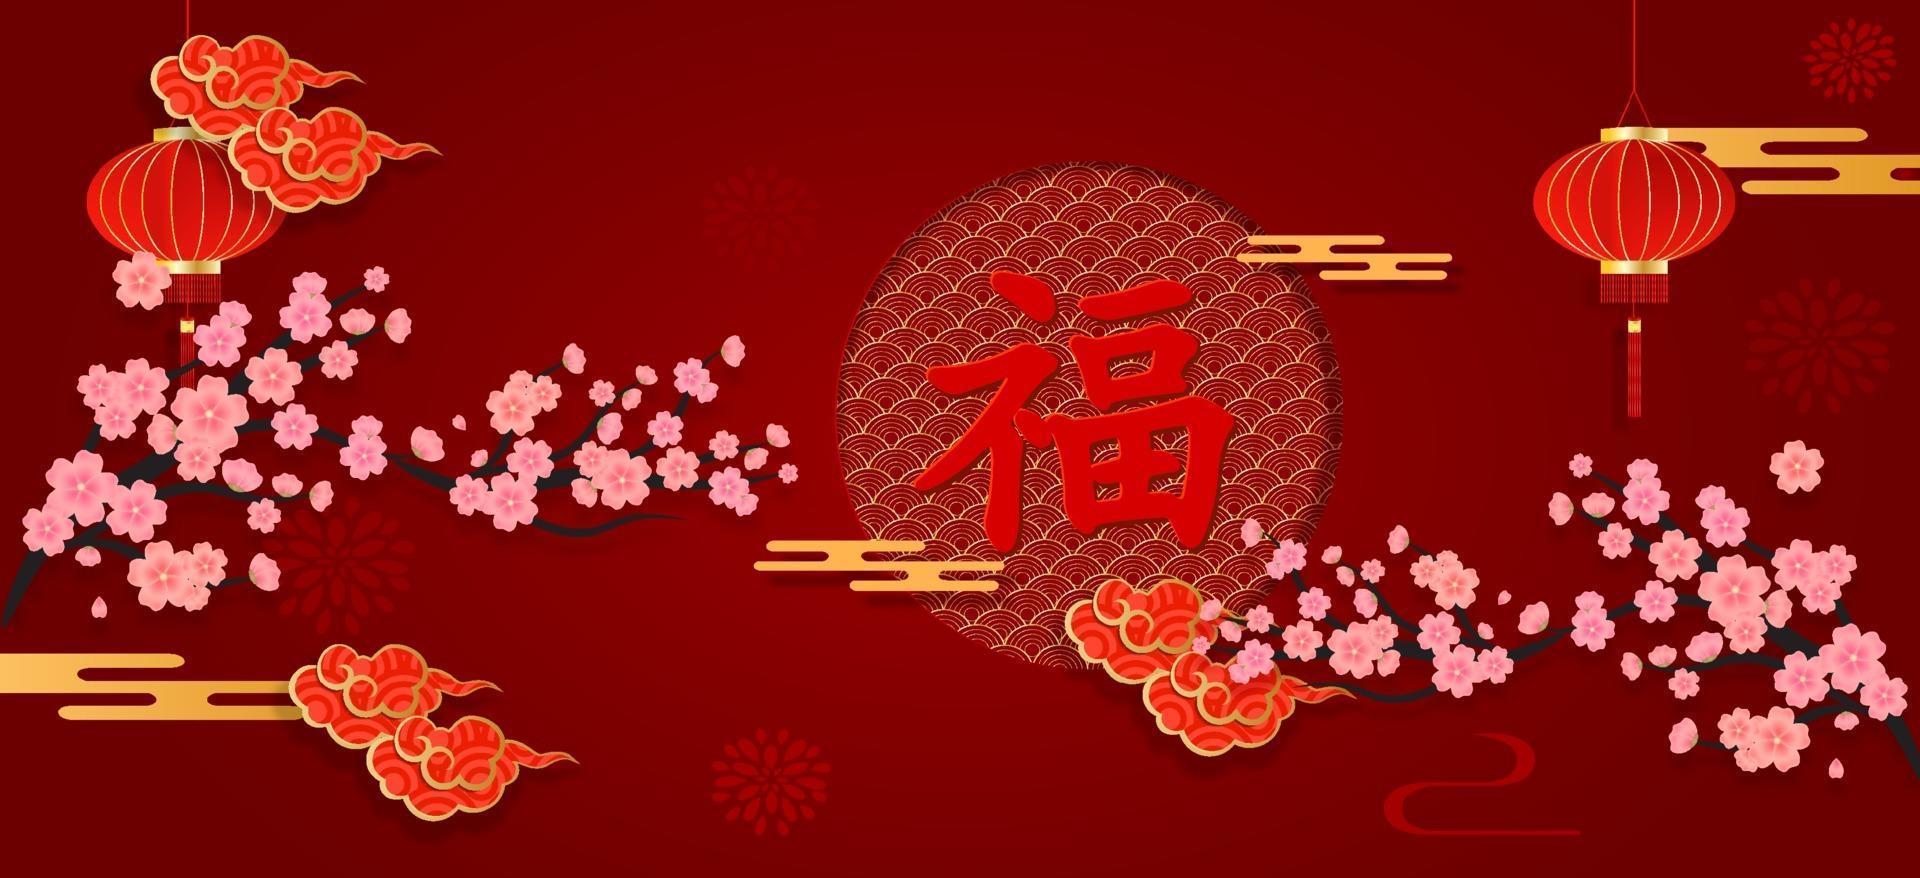 Chinees Nieuwjaar banner op rood papier gesneden met Aziatische elementen ambachtelijke stijl. Chinese karakterzegeningen erop geschreven, voor het vieren van Chinees Nieuwjaar. vector